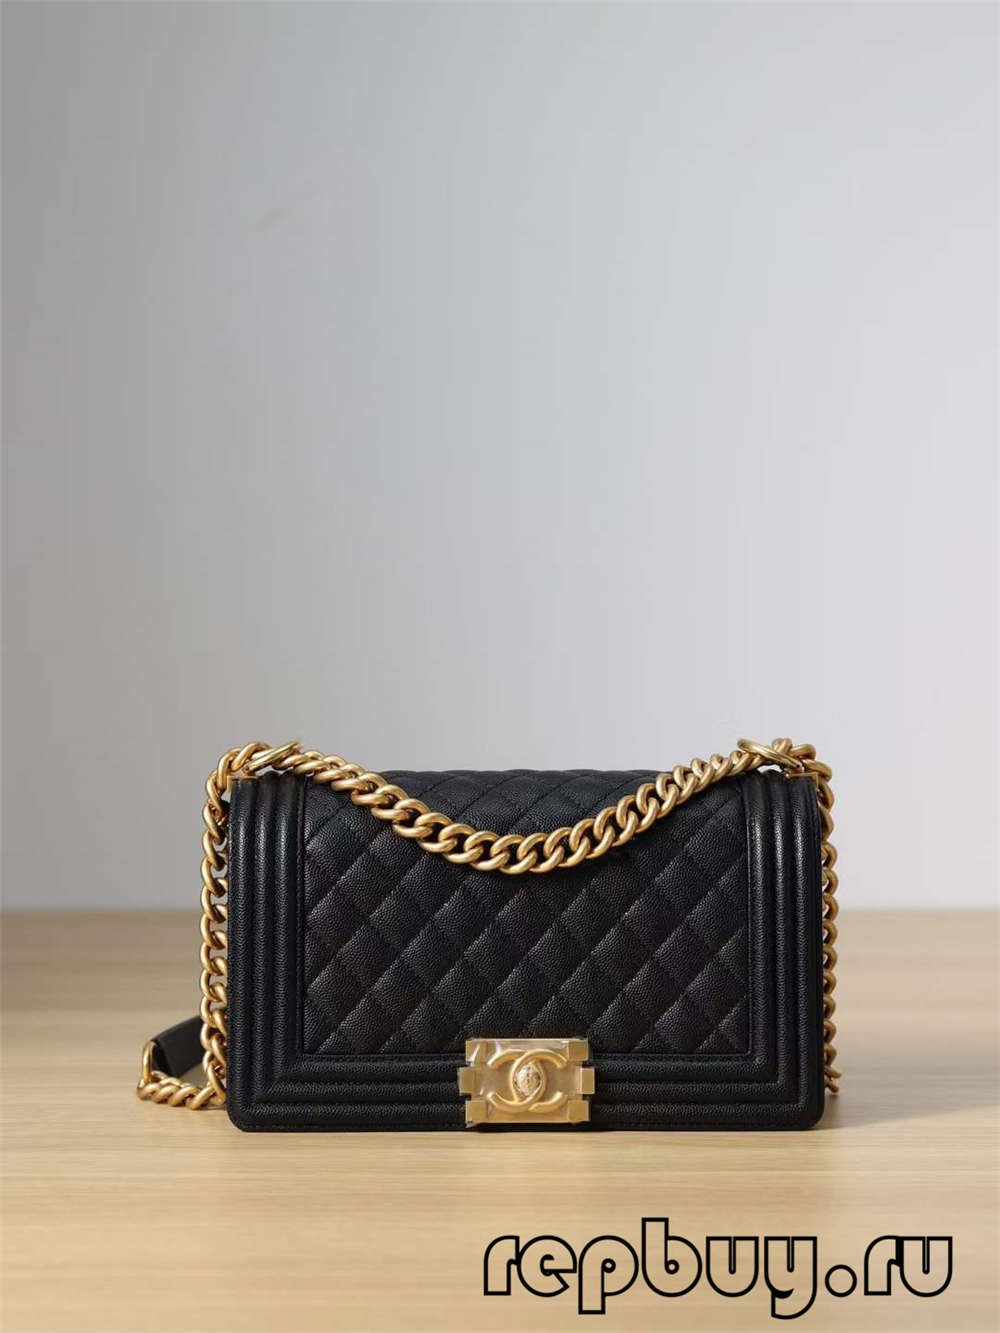 Chanel Leboy Top Replica Handbag Medium Gold Buckle (2022 Edition)-Best Quality Fake designer Bag Review, Replica designer bag ru